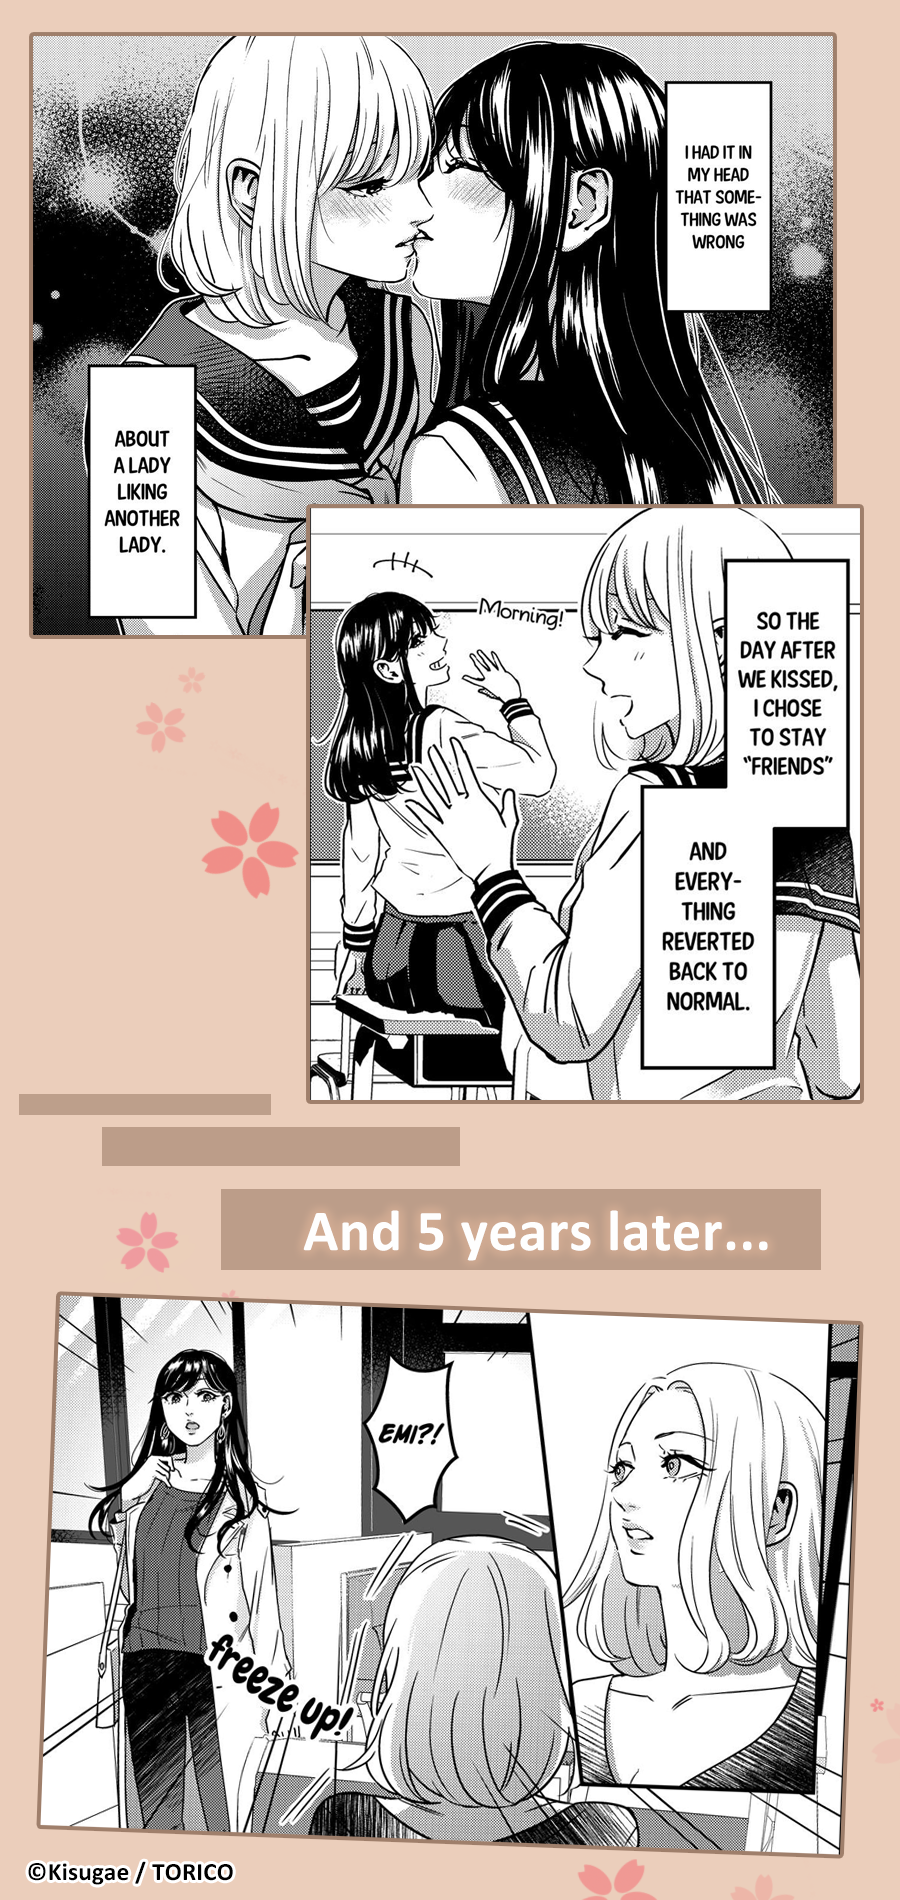 Keep An Eye On You Manga Yuri Manga You'll Love|MangaPlaza